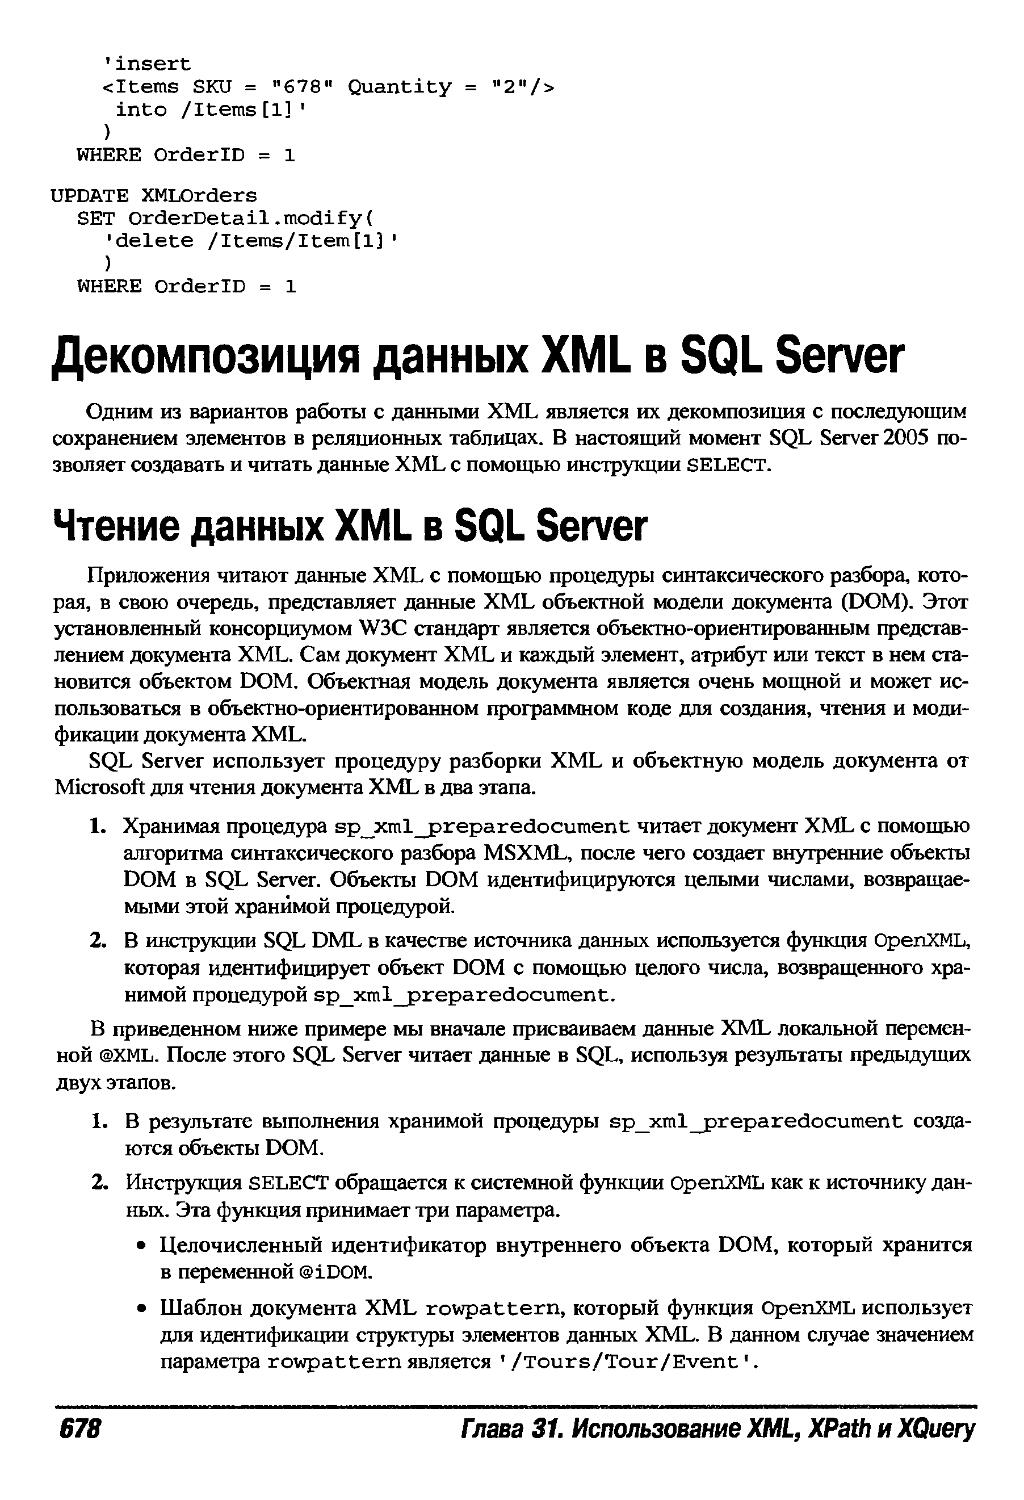 Декомпозиция данных XML в SQL Server